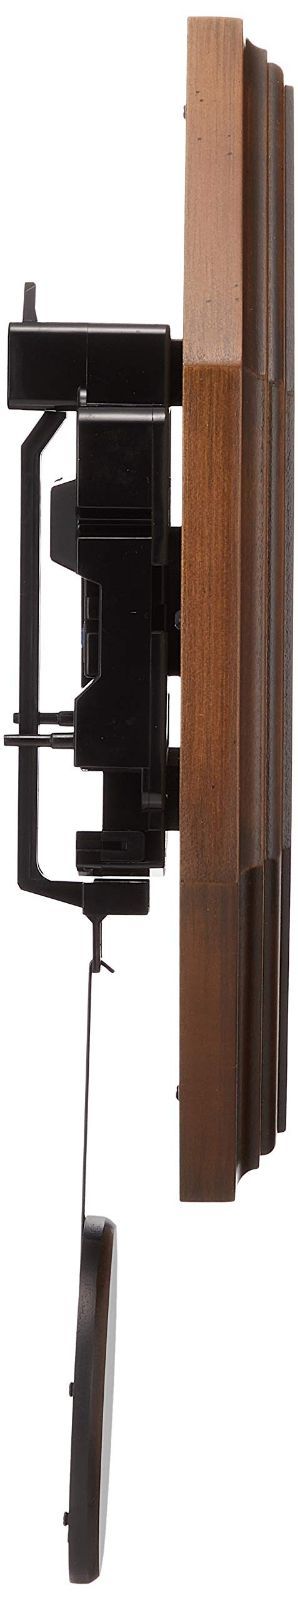 さんてる レトロ 電波 振り子 柱時計 日本製掛け時計 八角 (木文字) DQL635 アンティークブラウン φ270×380mm 